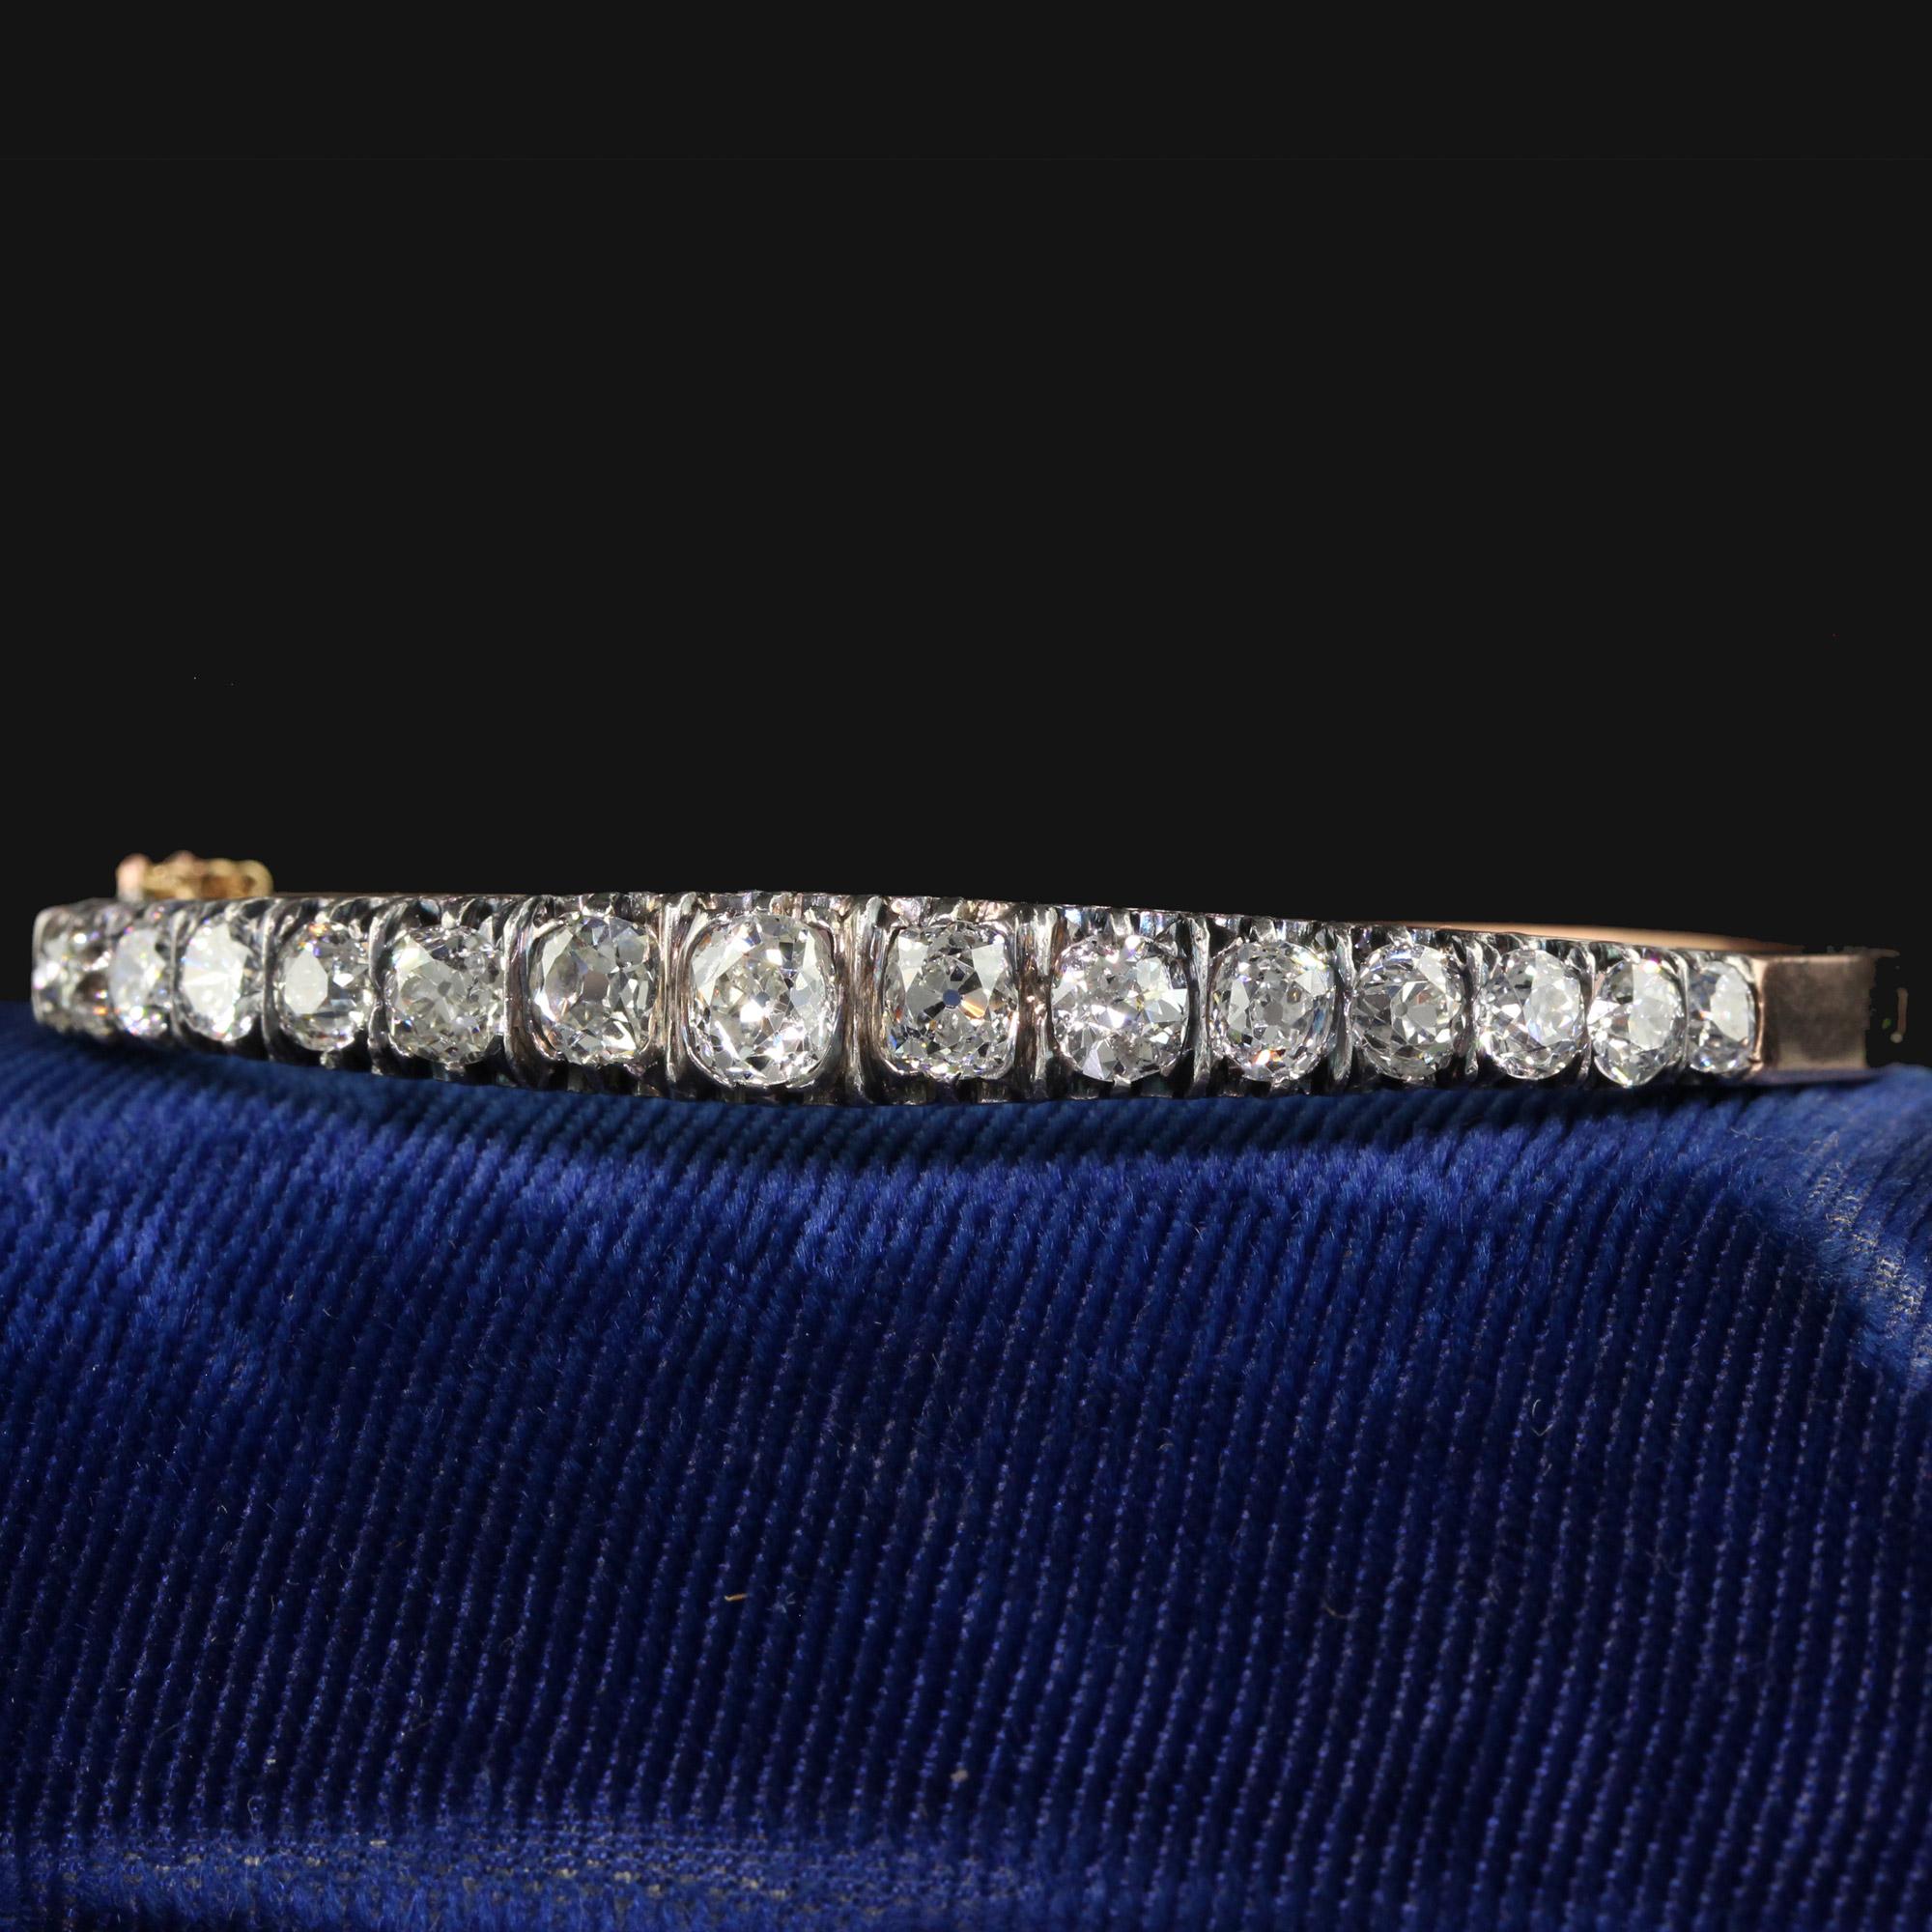 Schöne antike viktorianische Französisch 18K Gelbgold Old Mine Diamond Line Armreif Armband. Dieses unglaubliche viktorianische Armband mit Diamanten aus alten Minen ist aus 18 Karat Gelbgold und Silber gefertigt. Der obere Teil des Armreifs ist mit